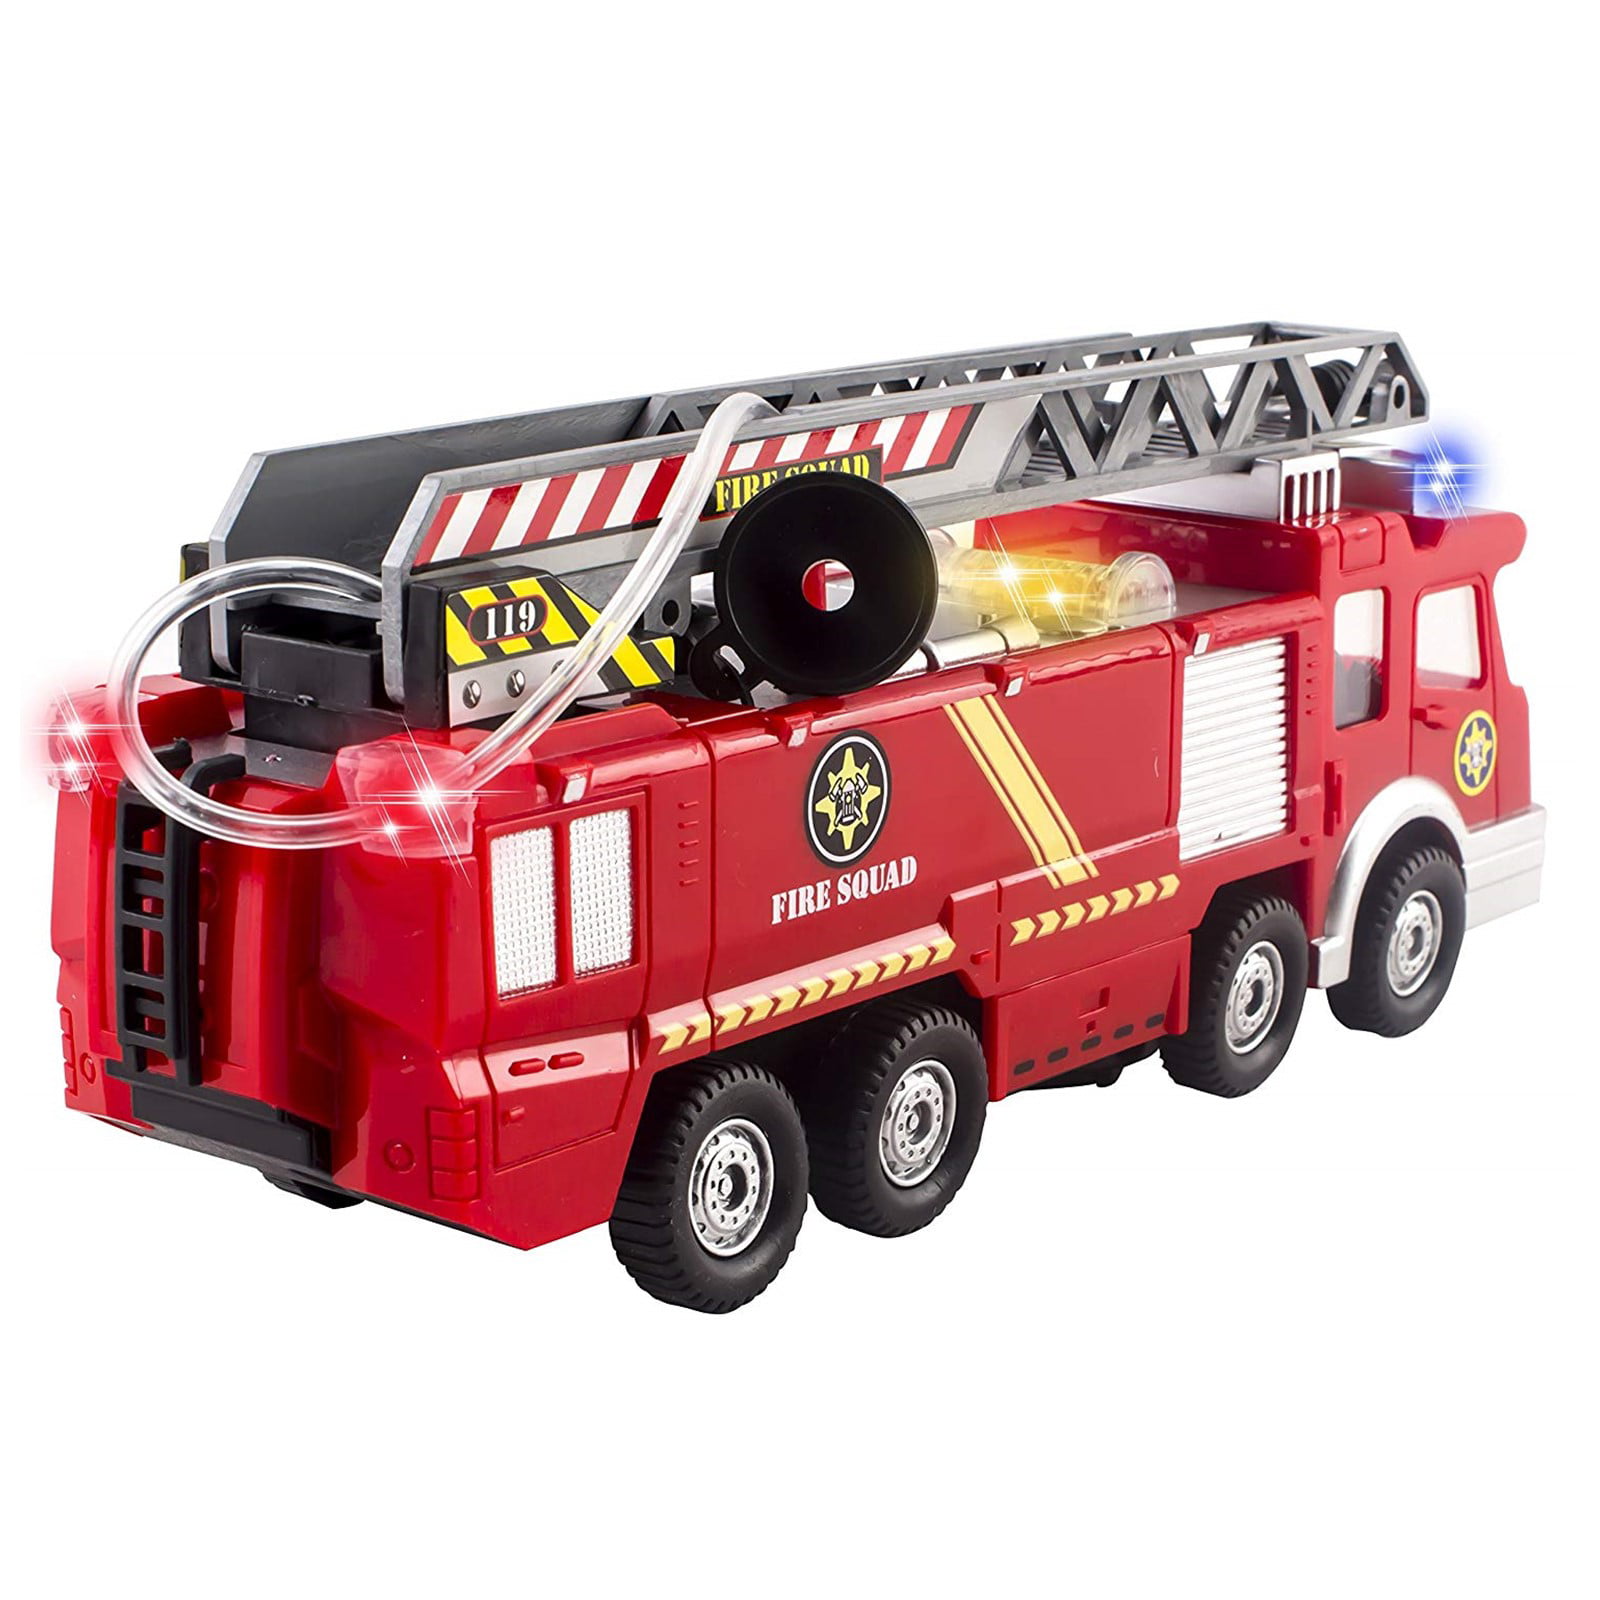 Купить игрушку пожарный. Пожарный грузовик 76109 Fire engine. Игрушка пожарная машина Fire Rescue. Машинка Rescue Boom Fire engine 1988. Пожарная машина игрушка Китай Ladder Truck.